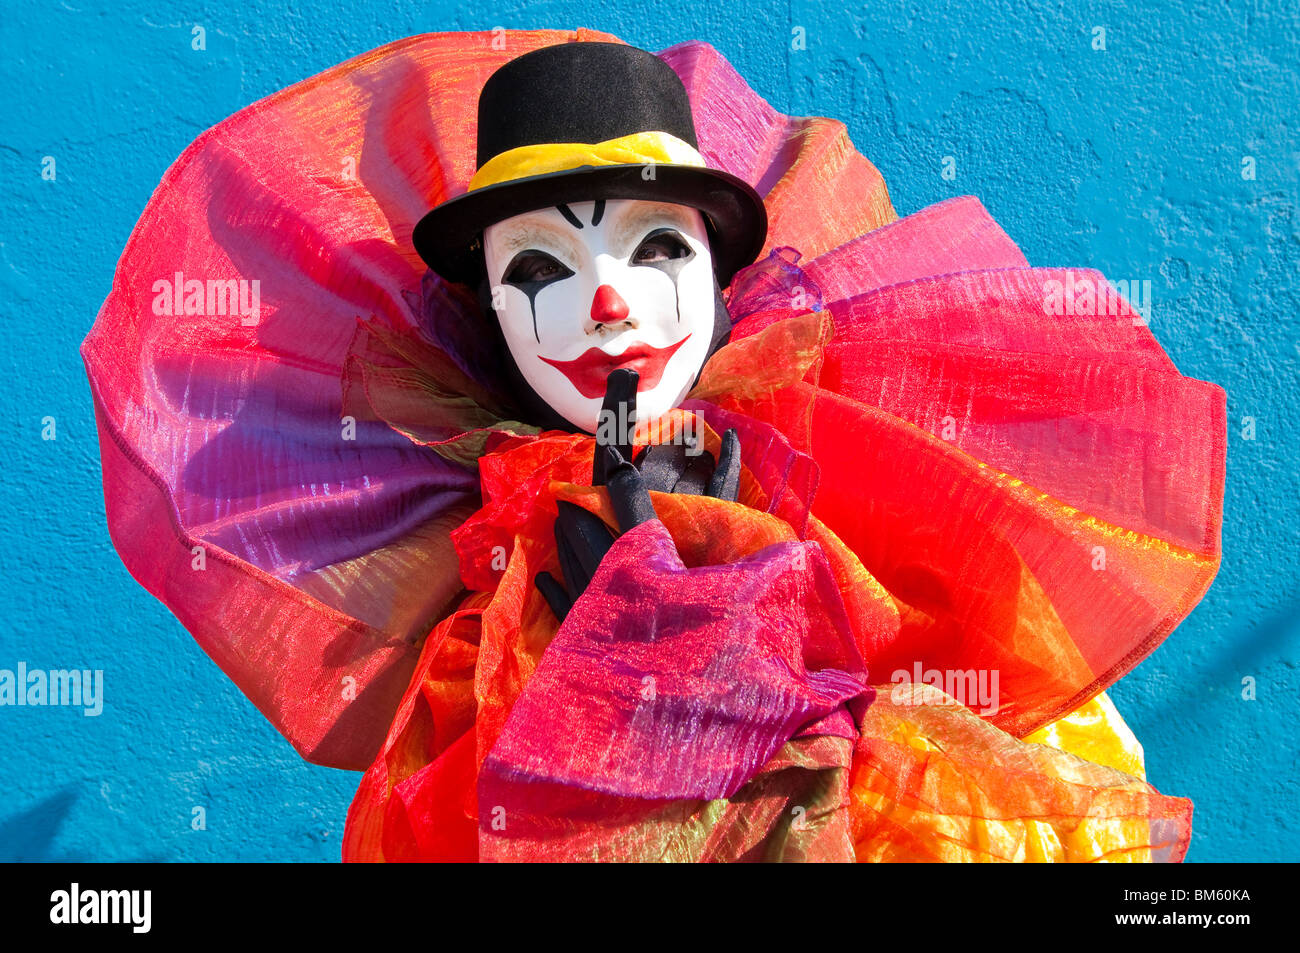 Clown at Venice Carnival, Italy. Stock Photo